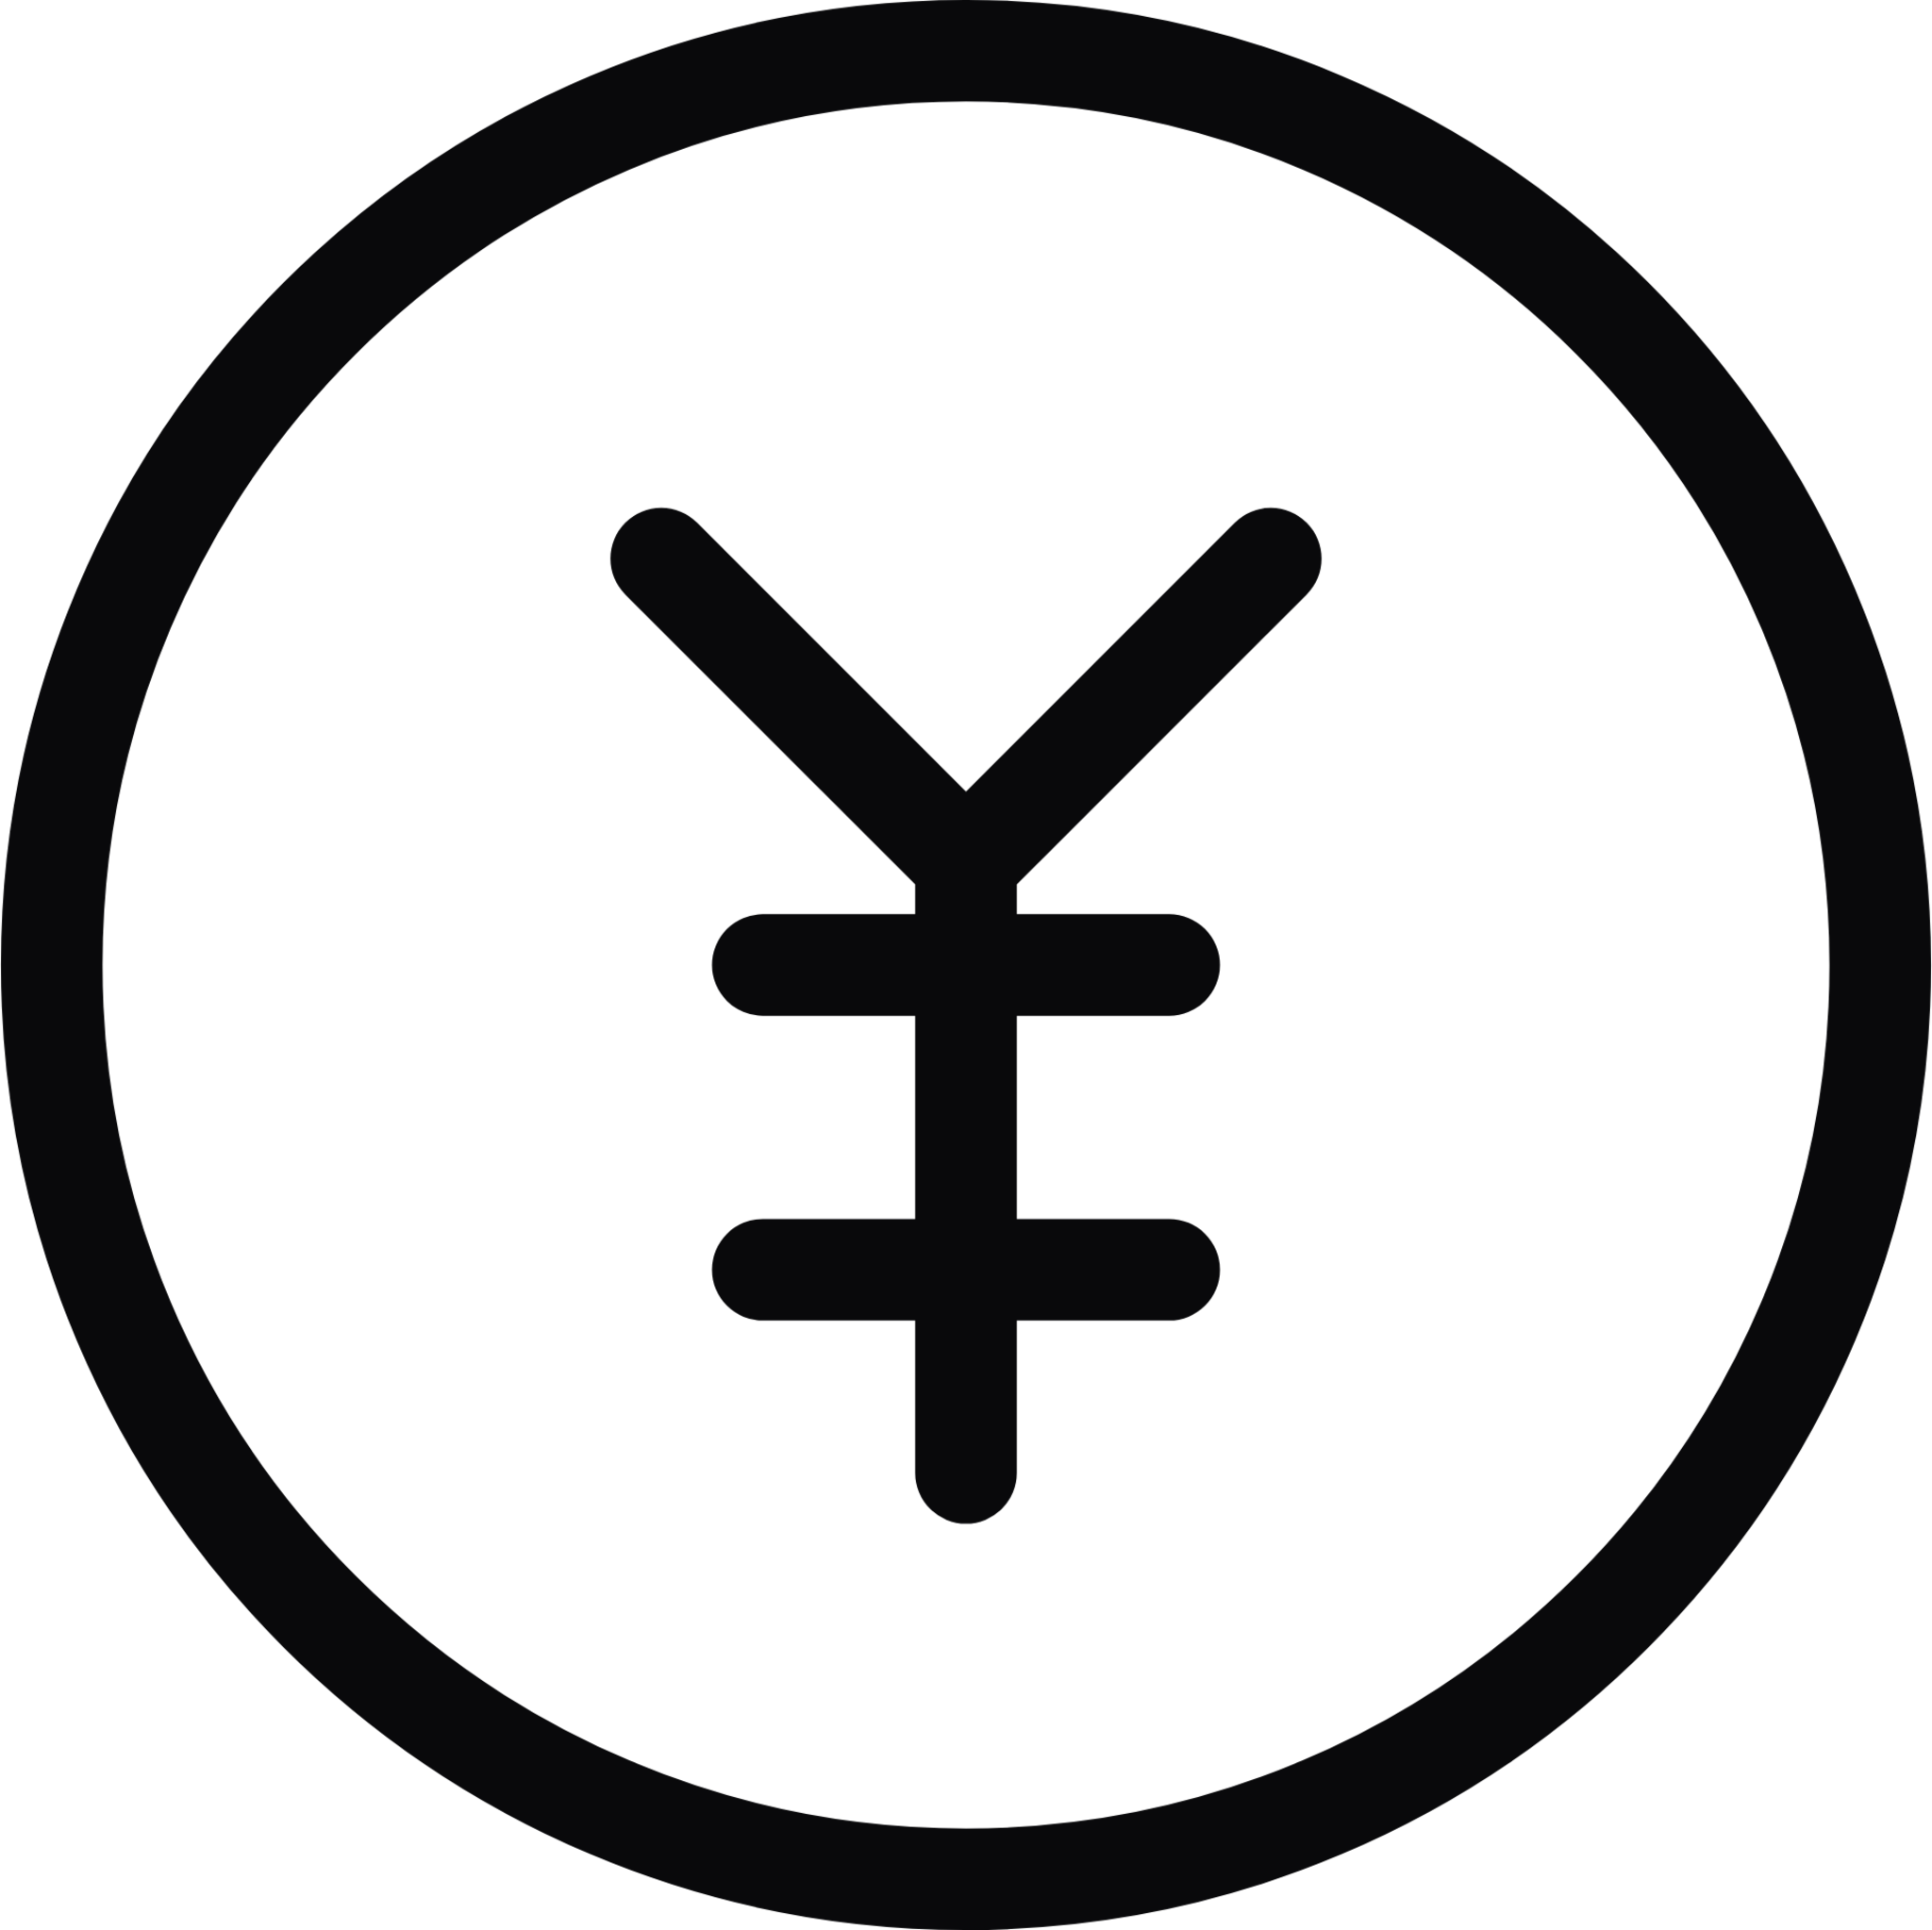 yen coin icon